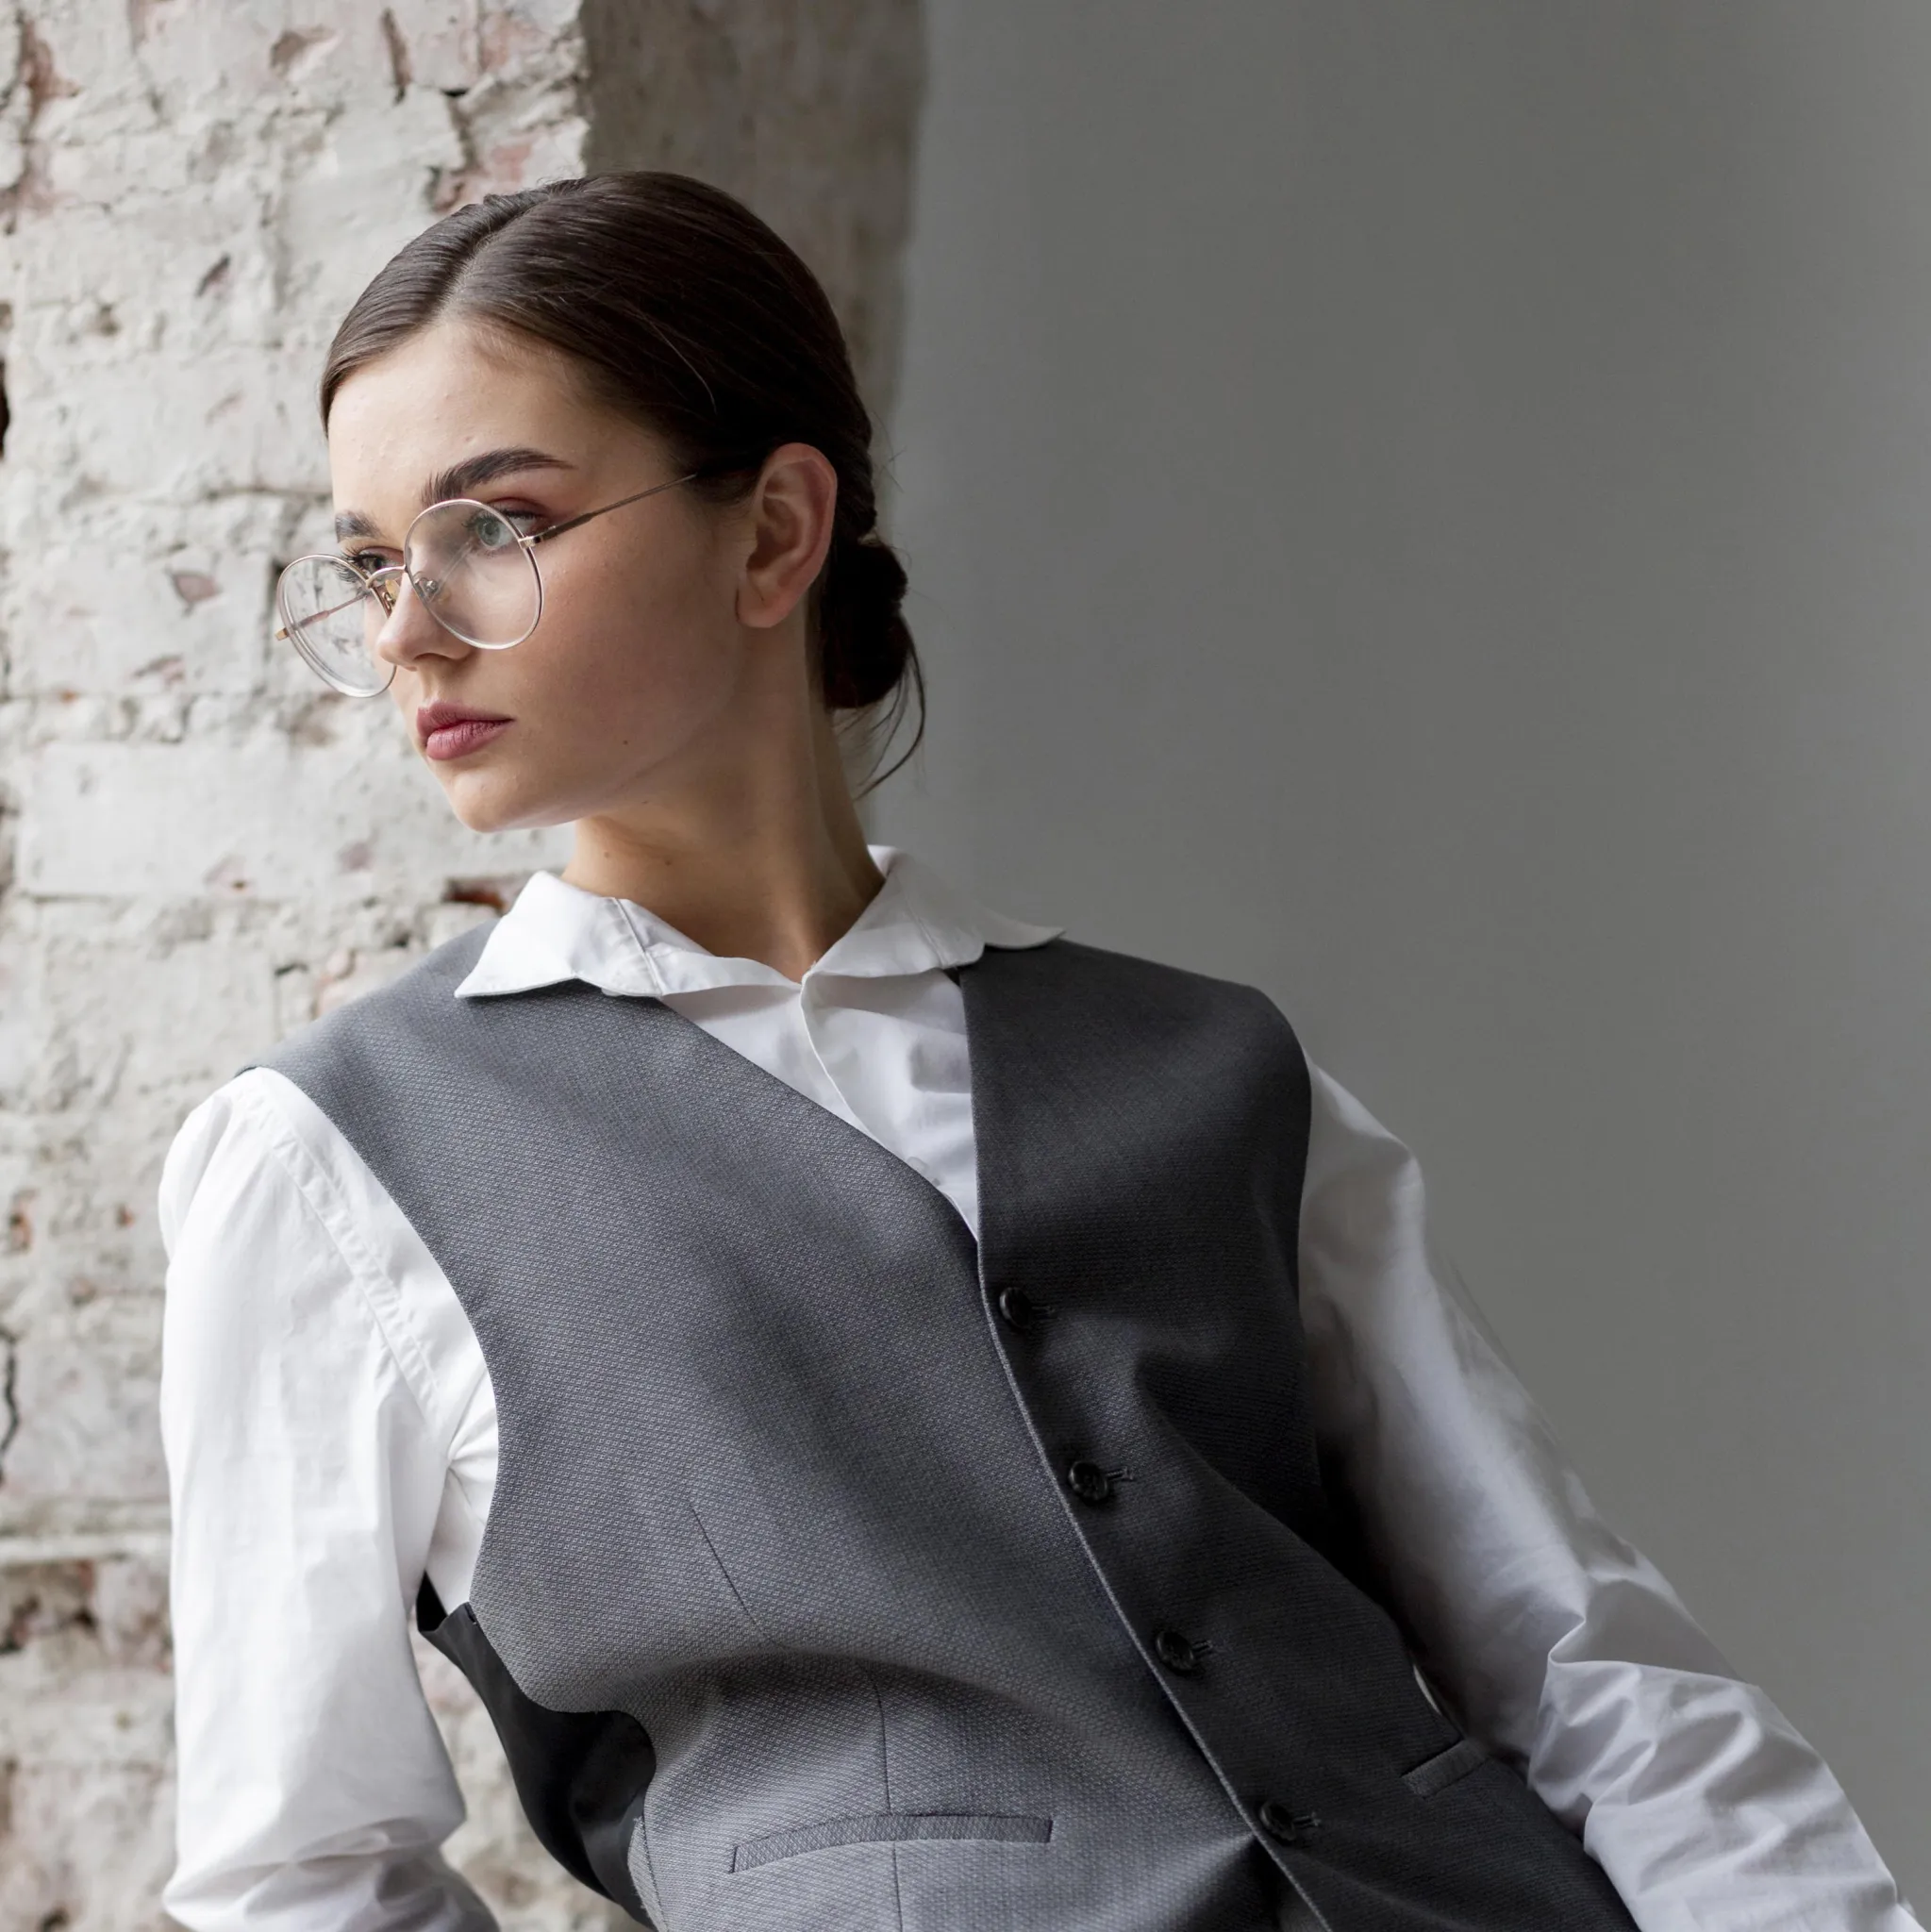 Women's Dark Grey Suit - Sleek and Sophisticated - Wellness Wonders